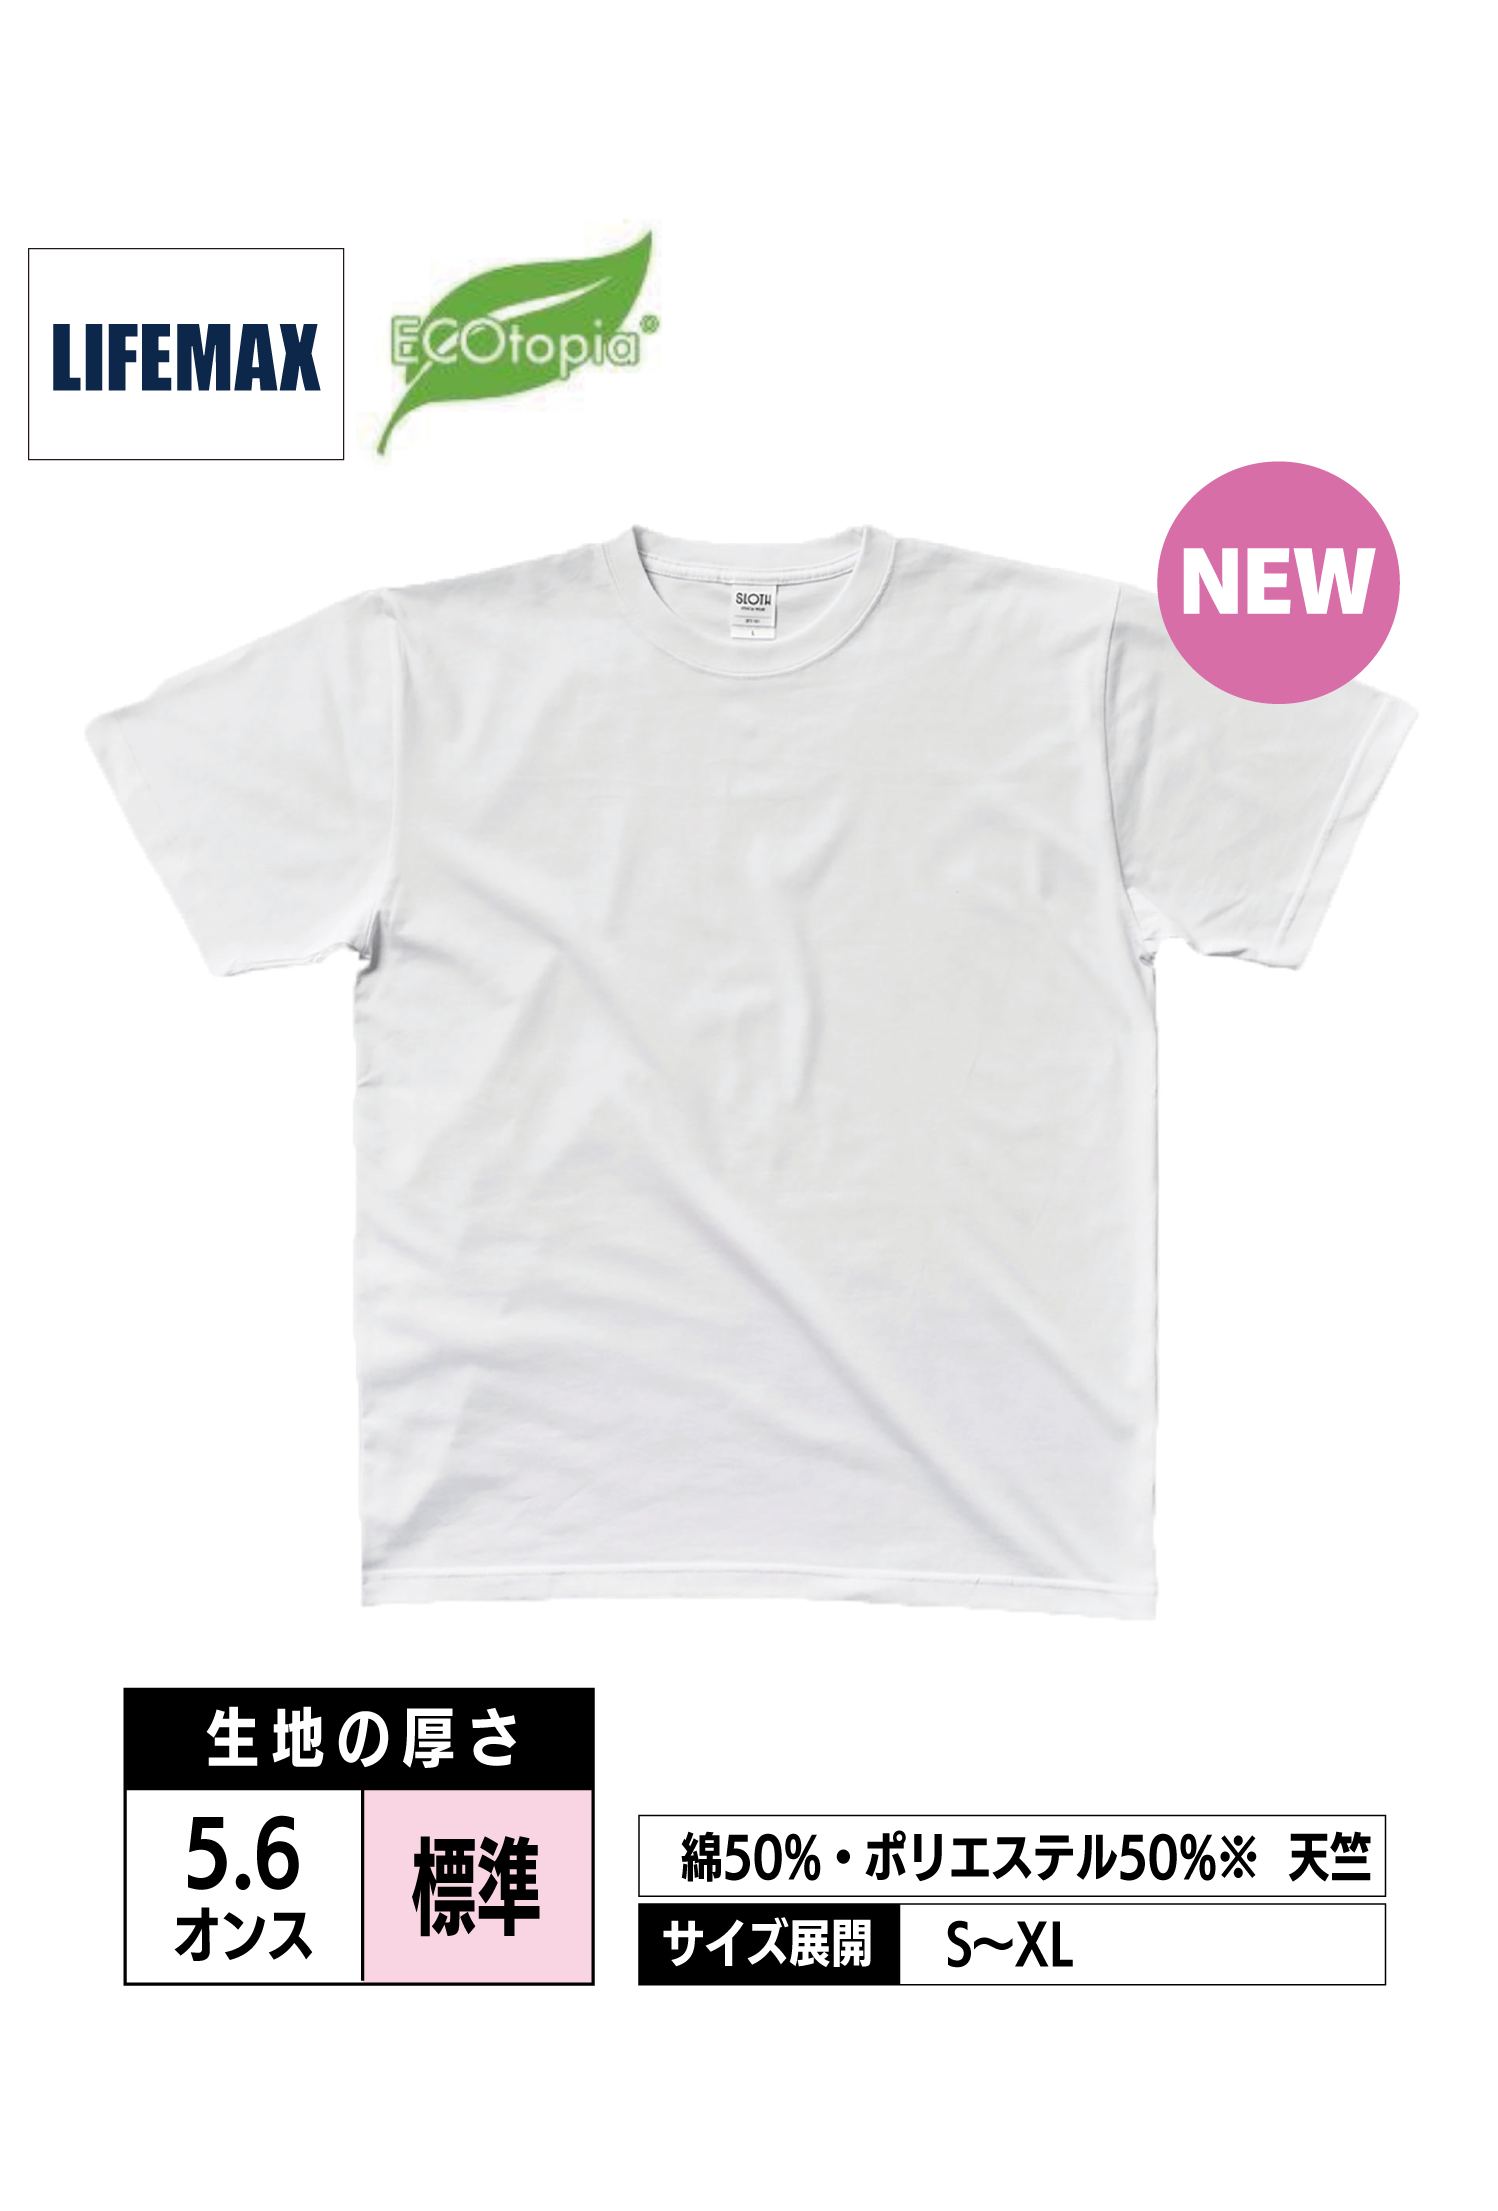 MST1101｜コットンポリTシャツ(ペットボトルリサイクル) 【全3色】LIFEMAX